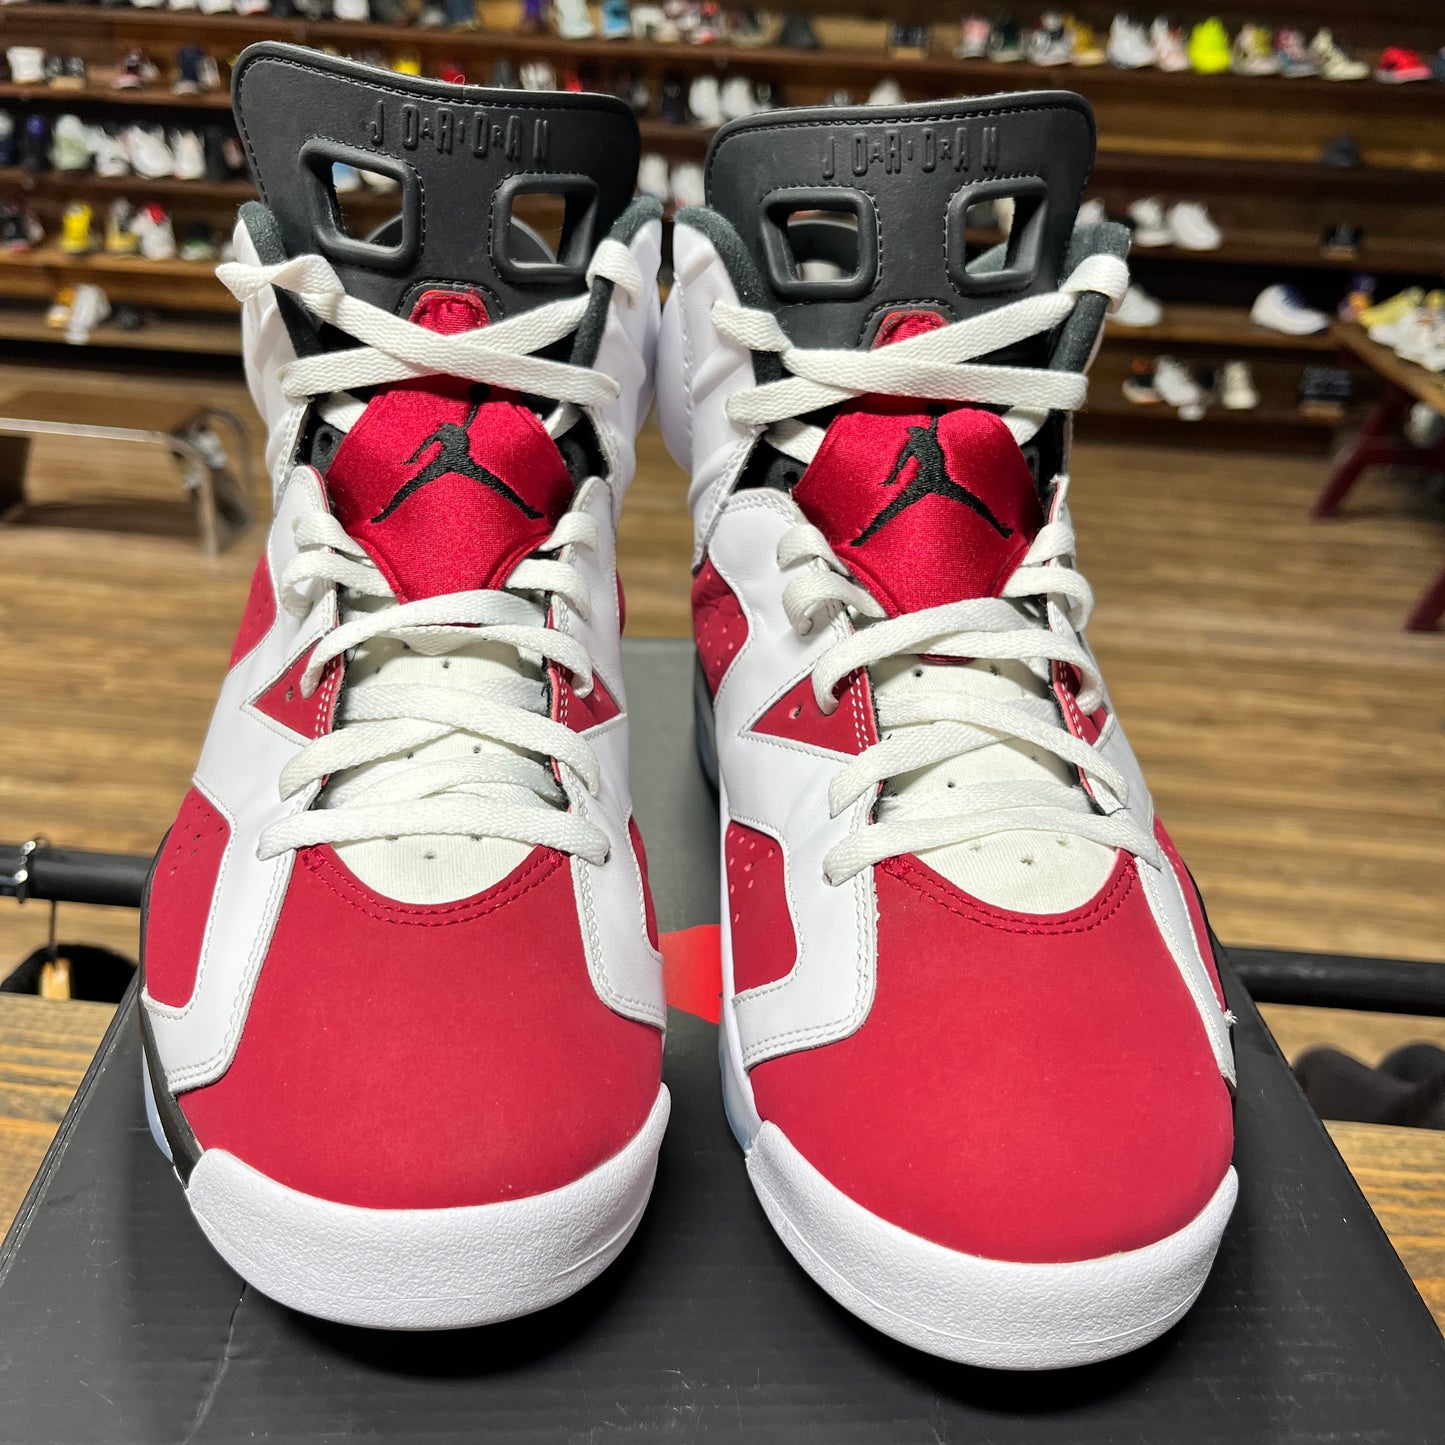 Jordan 6 'Carmine' Size 11.5